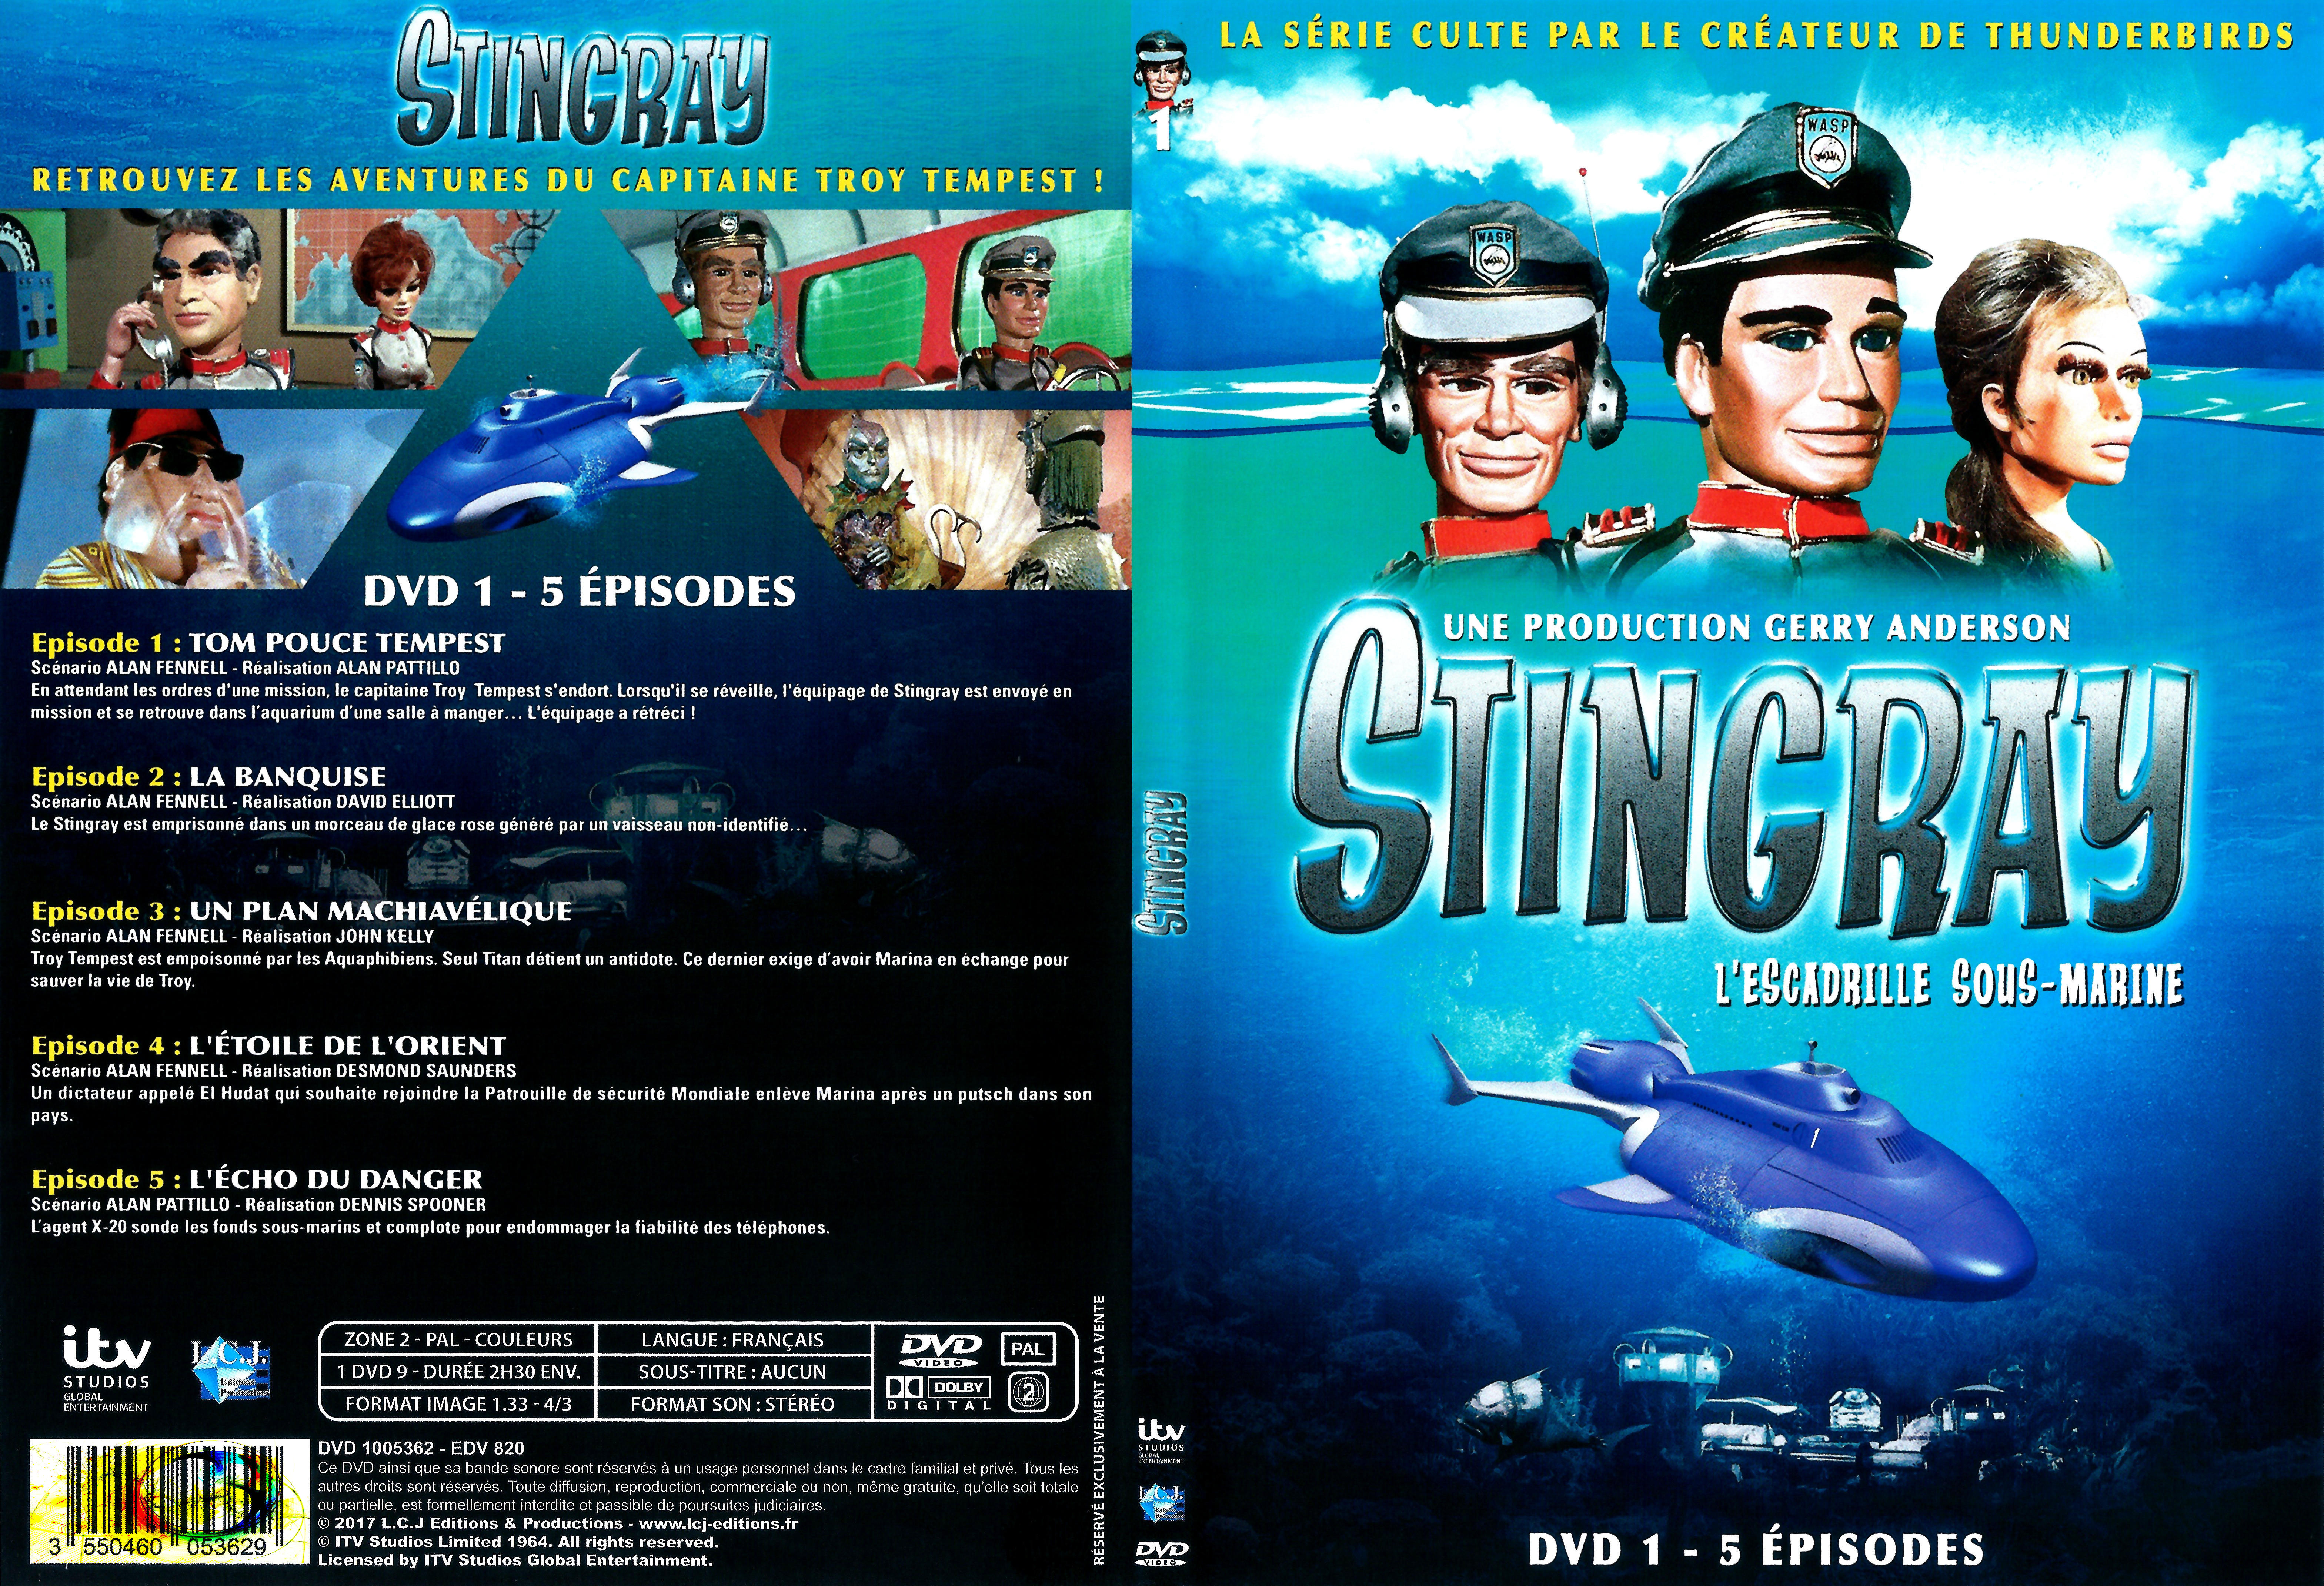 Jaquette DVD Stingray Saison 2 DVD 1